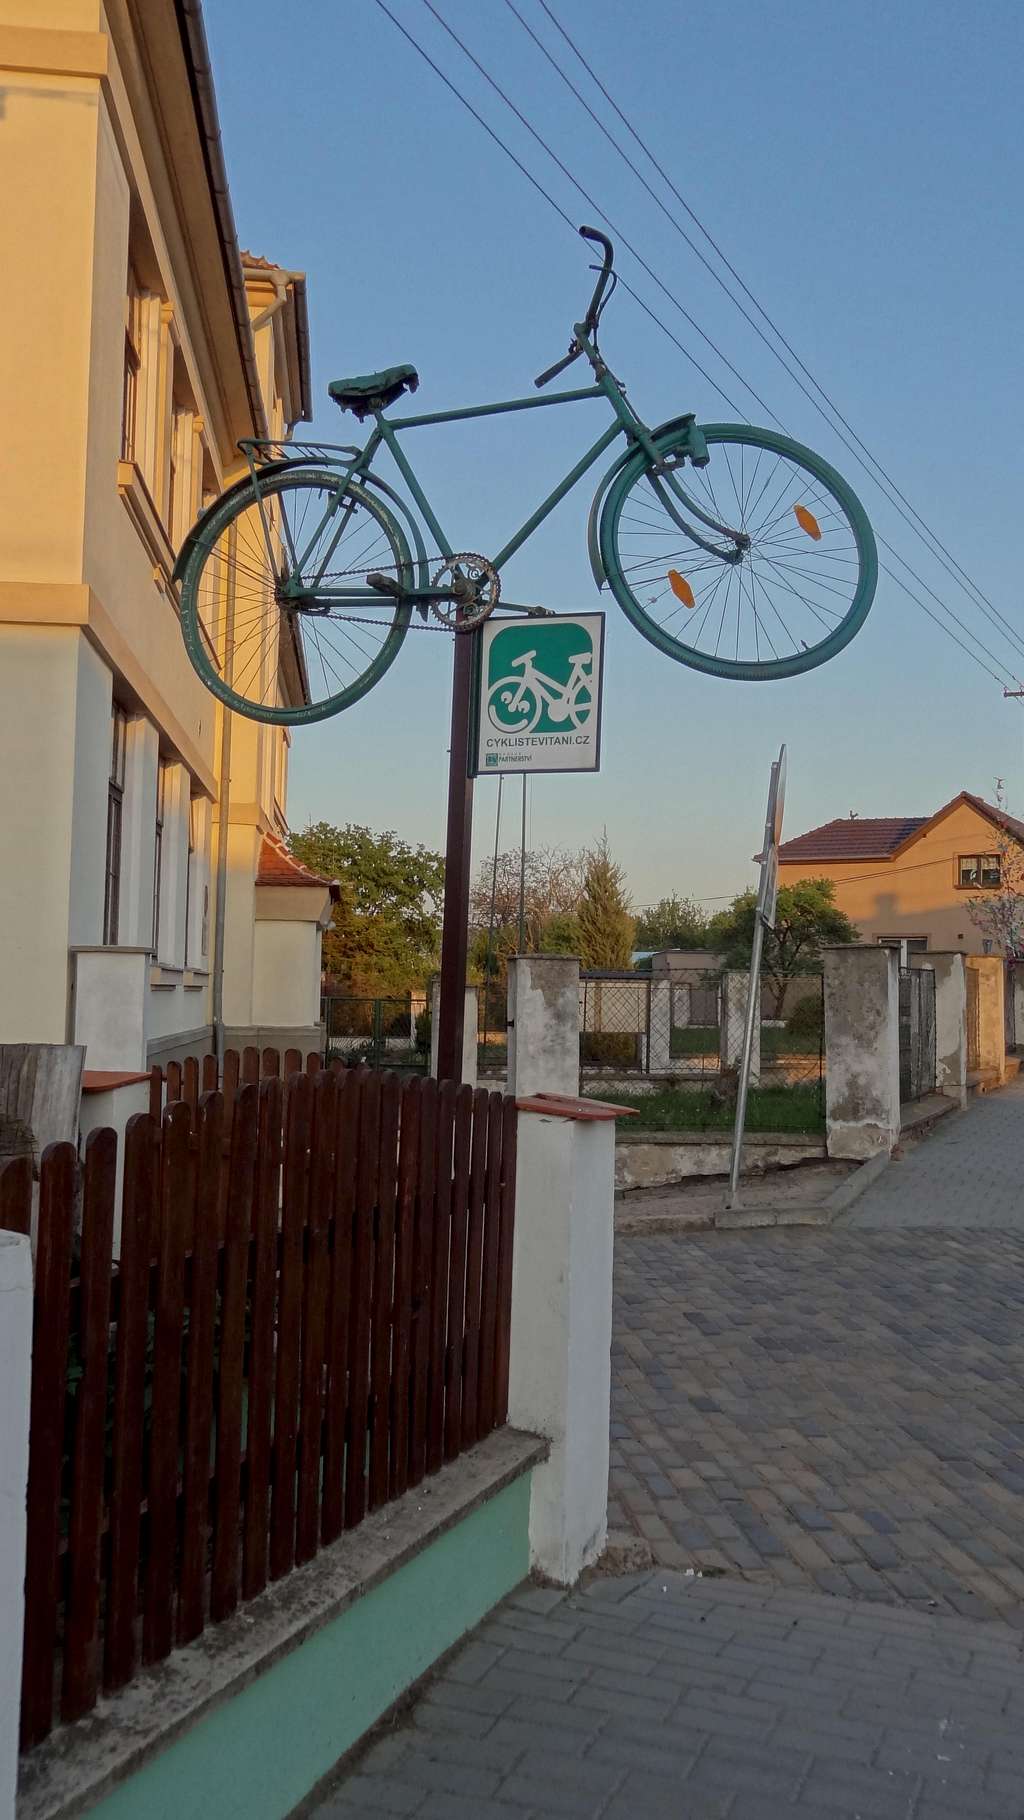 The Podyji national park is bike-friendly ;)